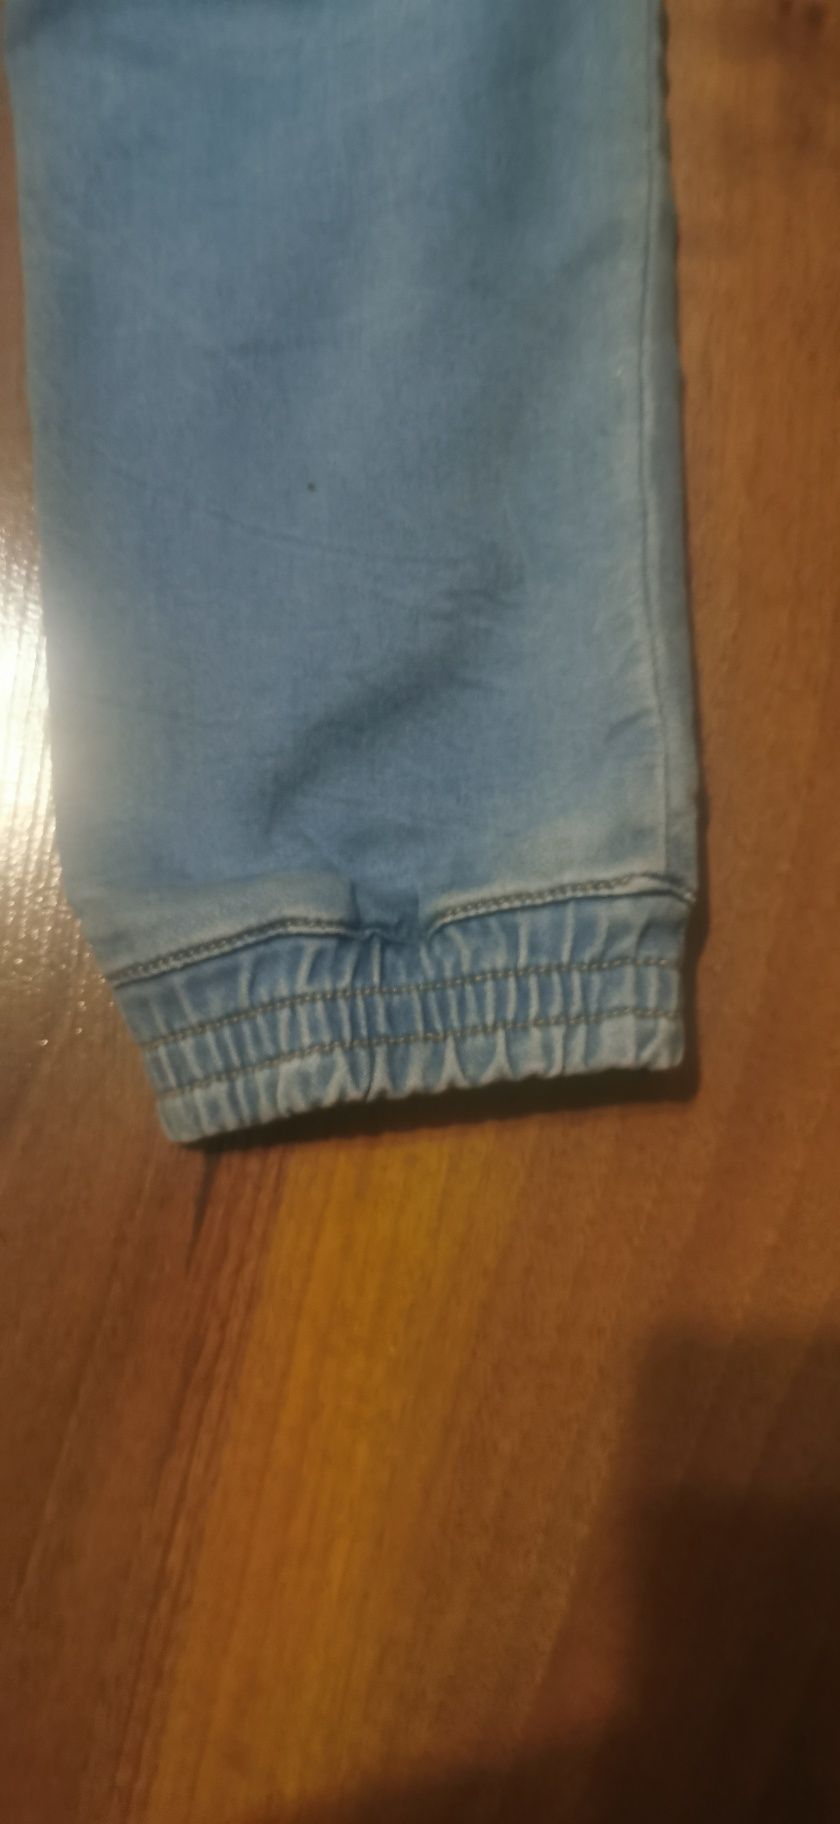 Spodnie jeansowe Coccodrillo